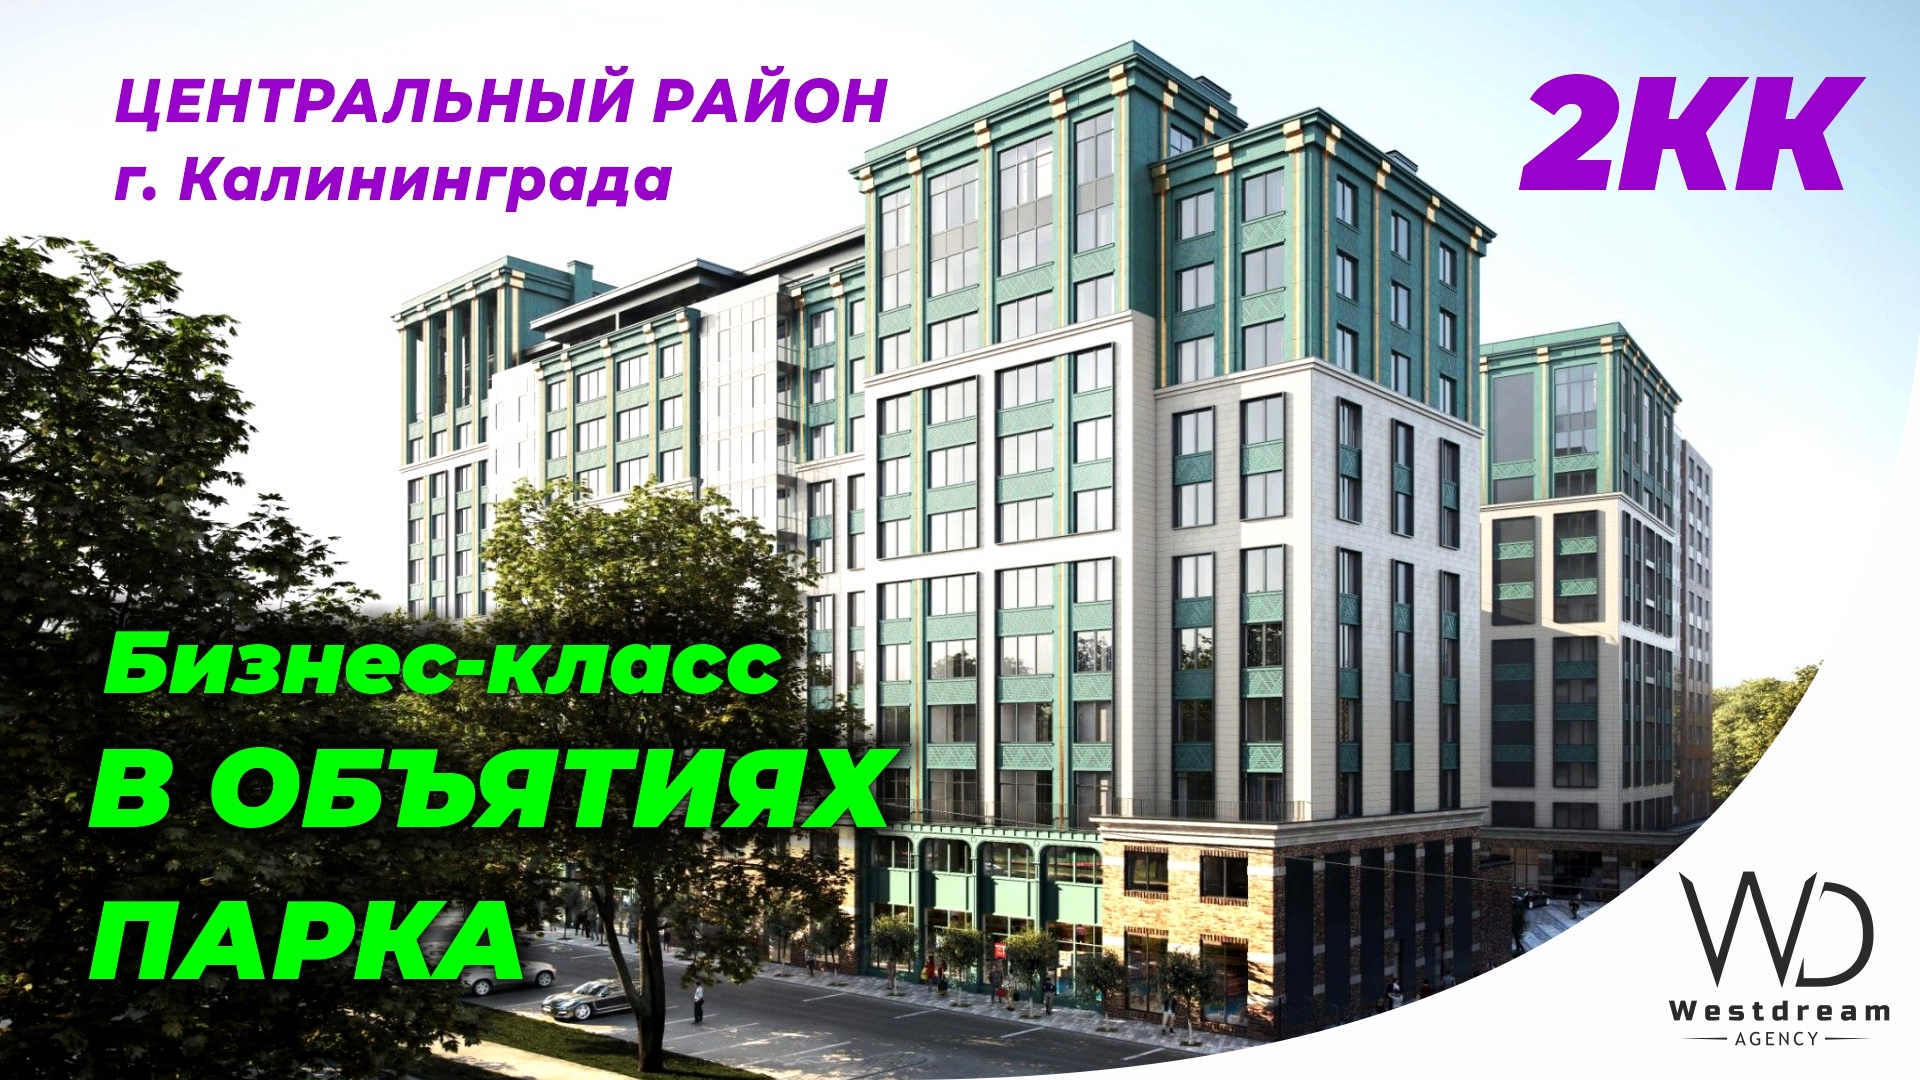 Квартира бизнес-класса в объятиях парка от застройщика в центре Калининграда. Агентство Westdream.